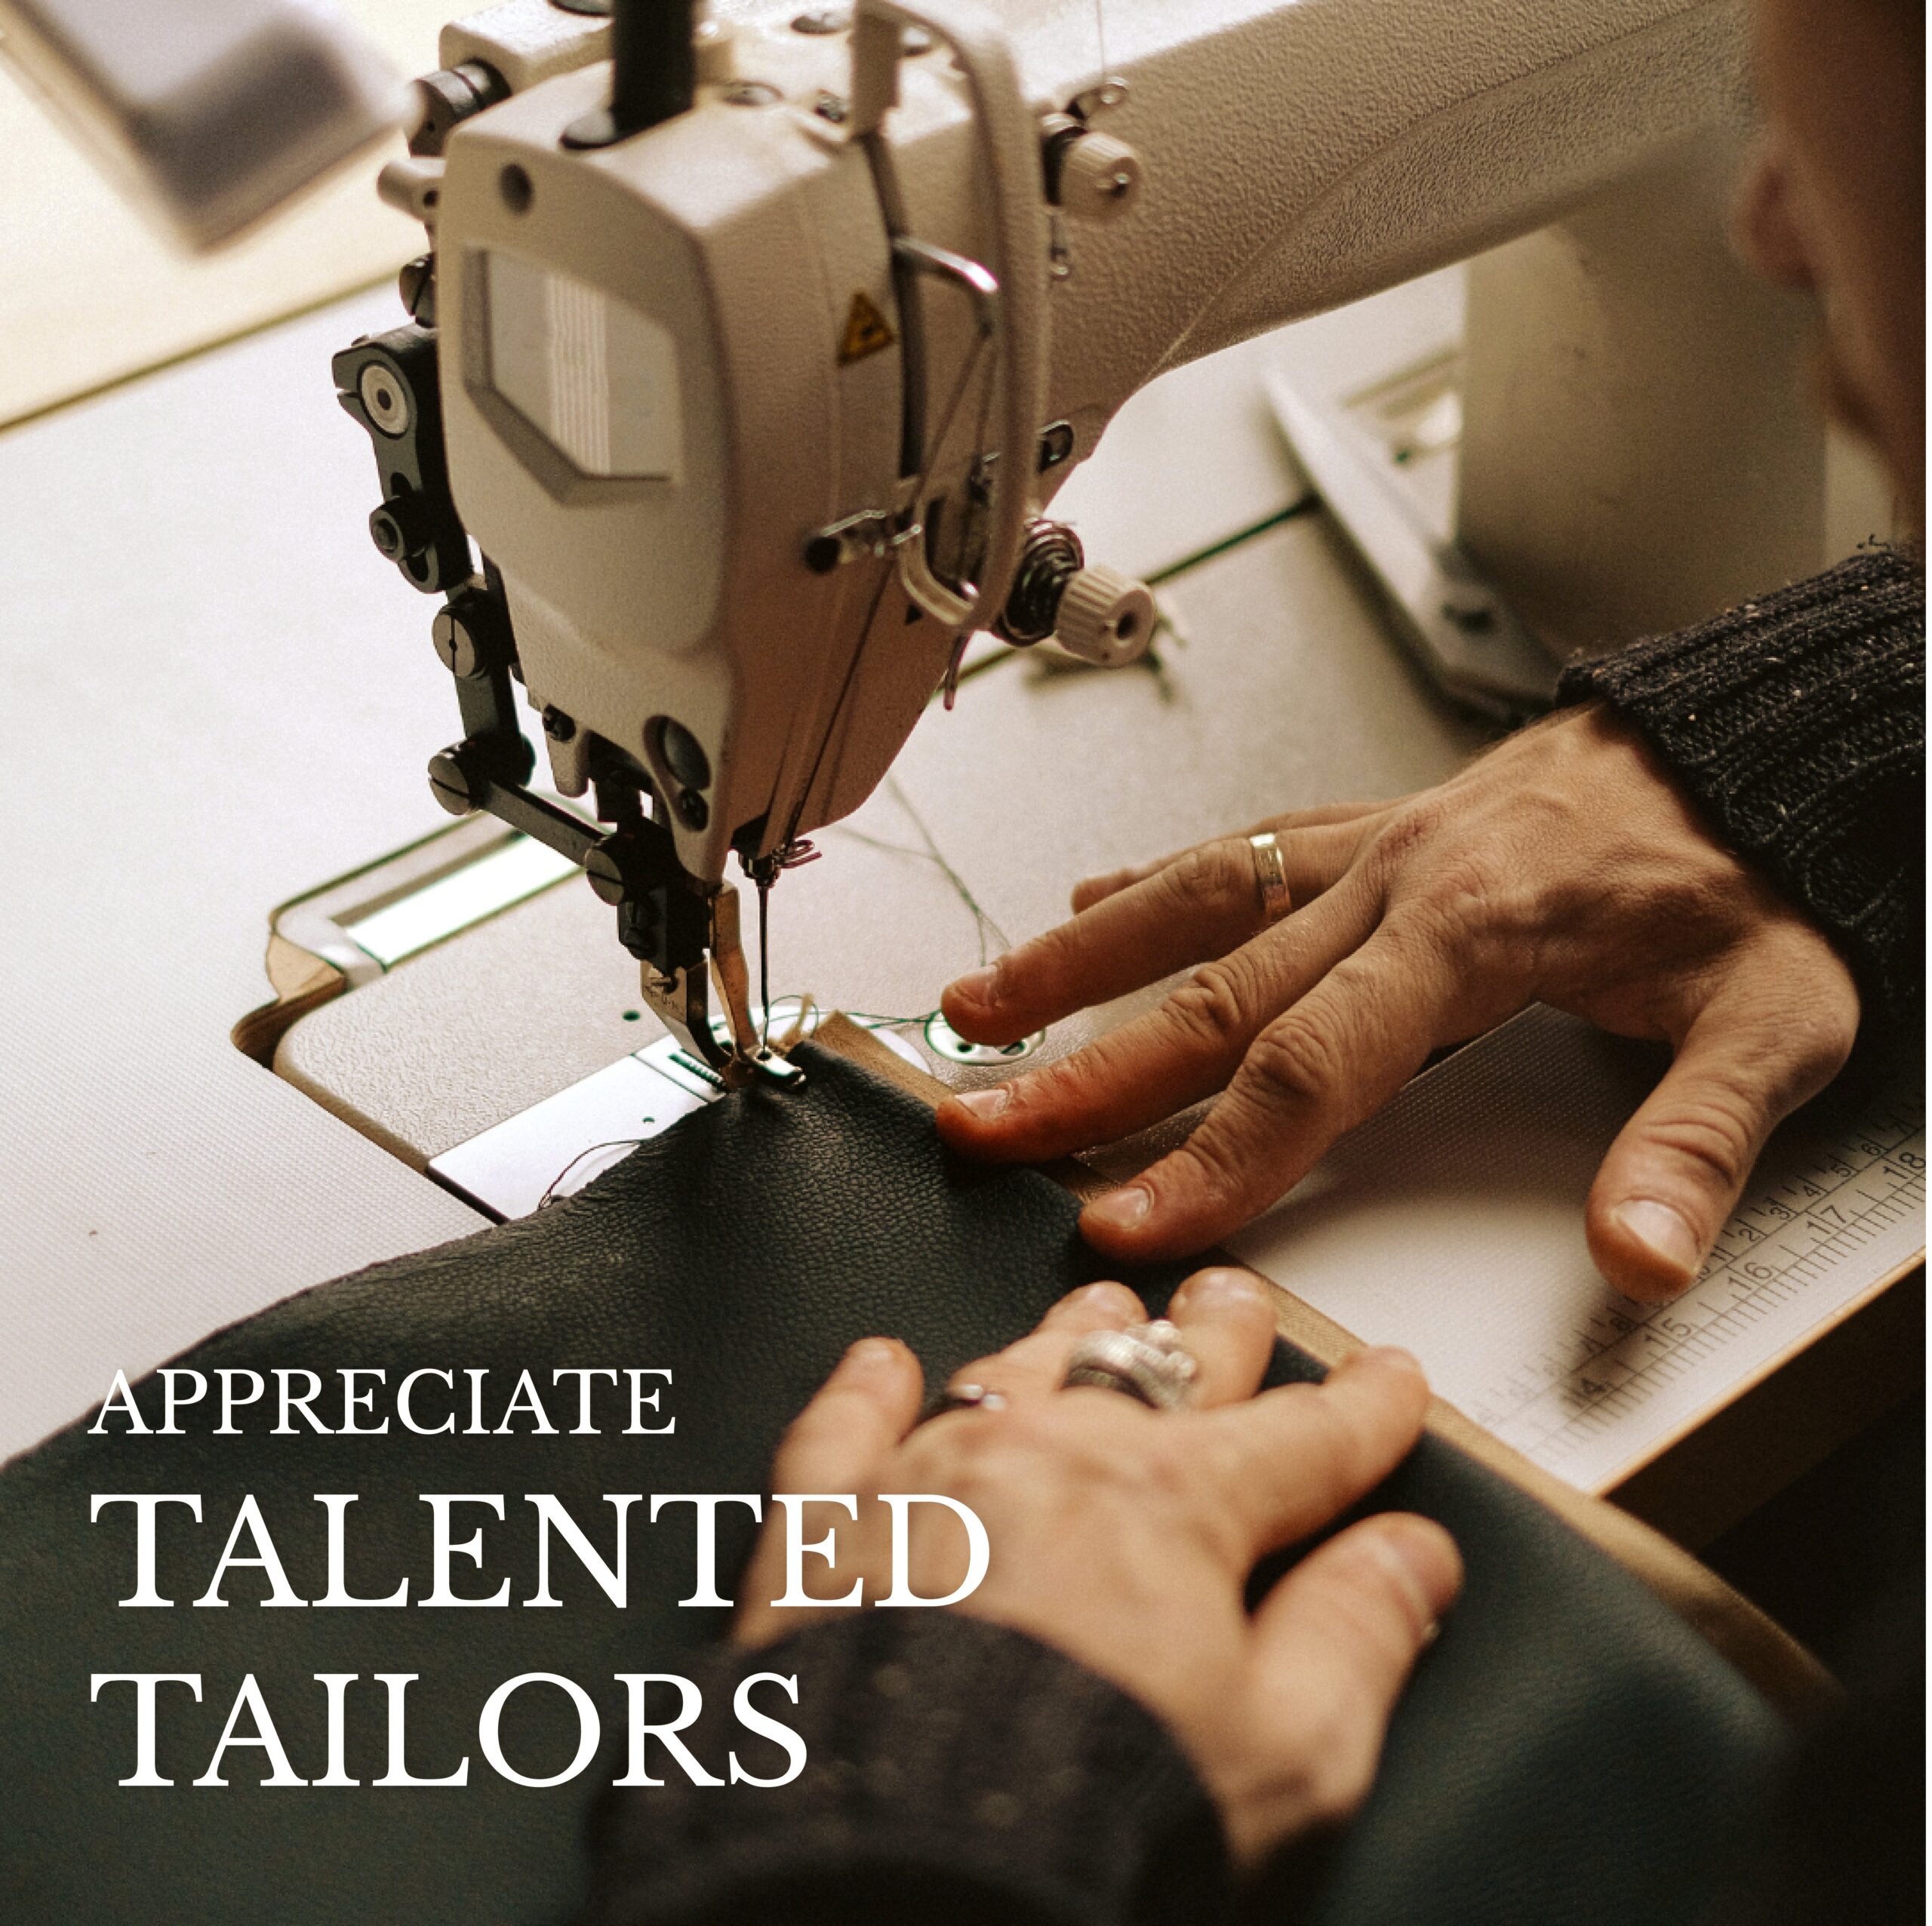 appreciate talented tailors